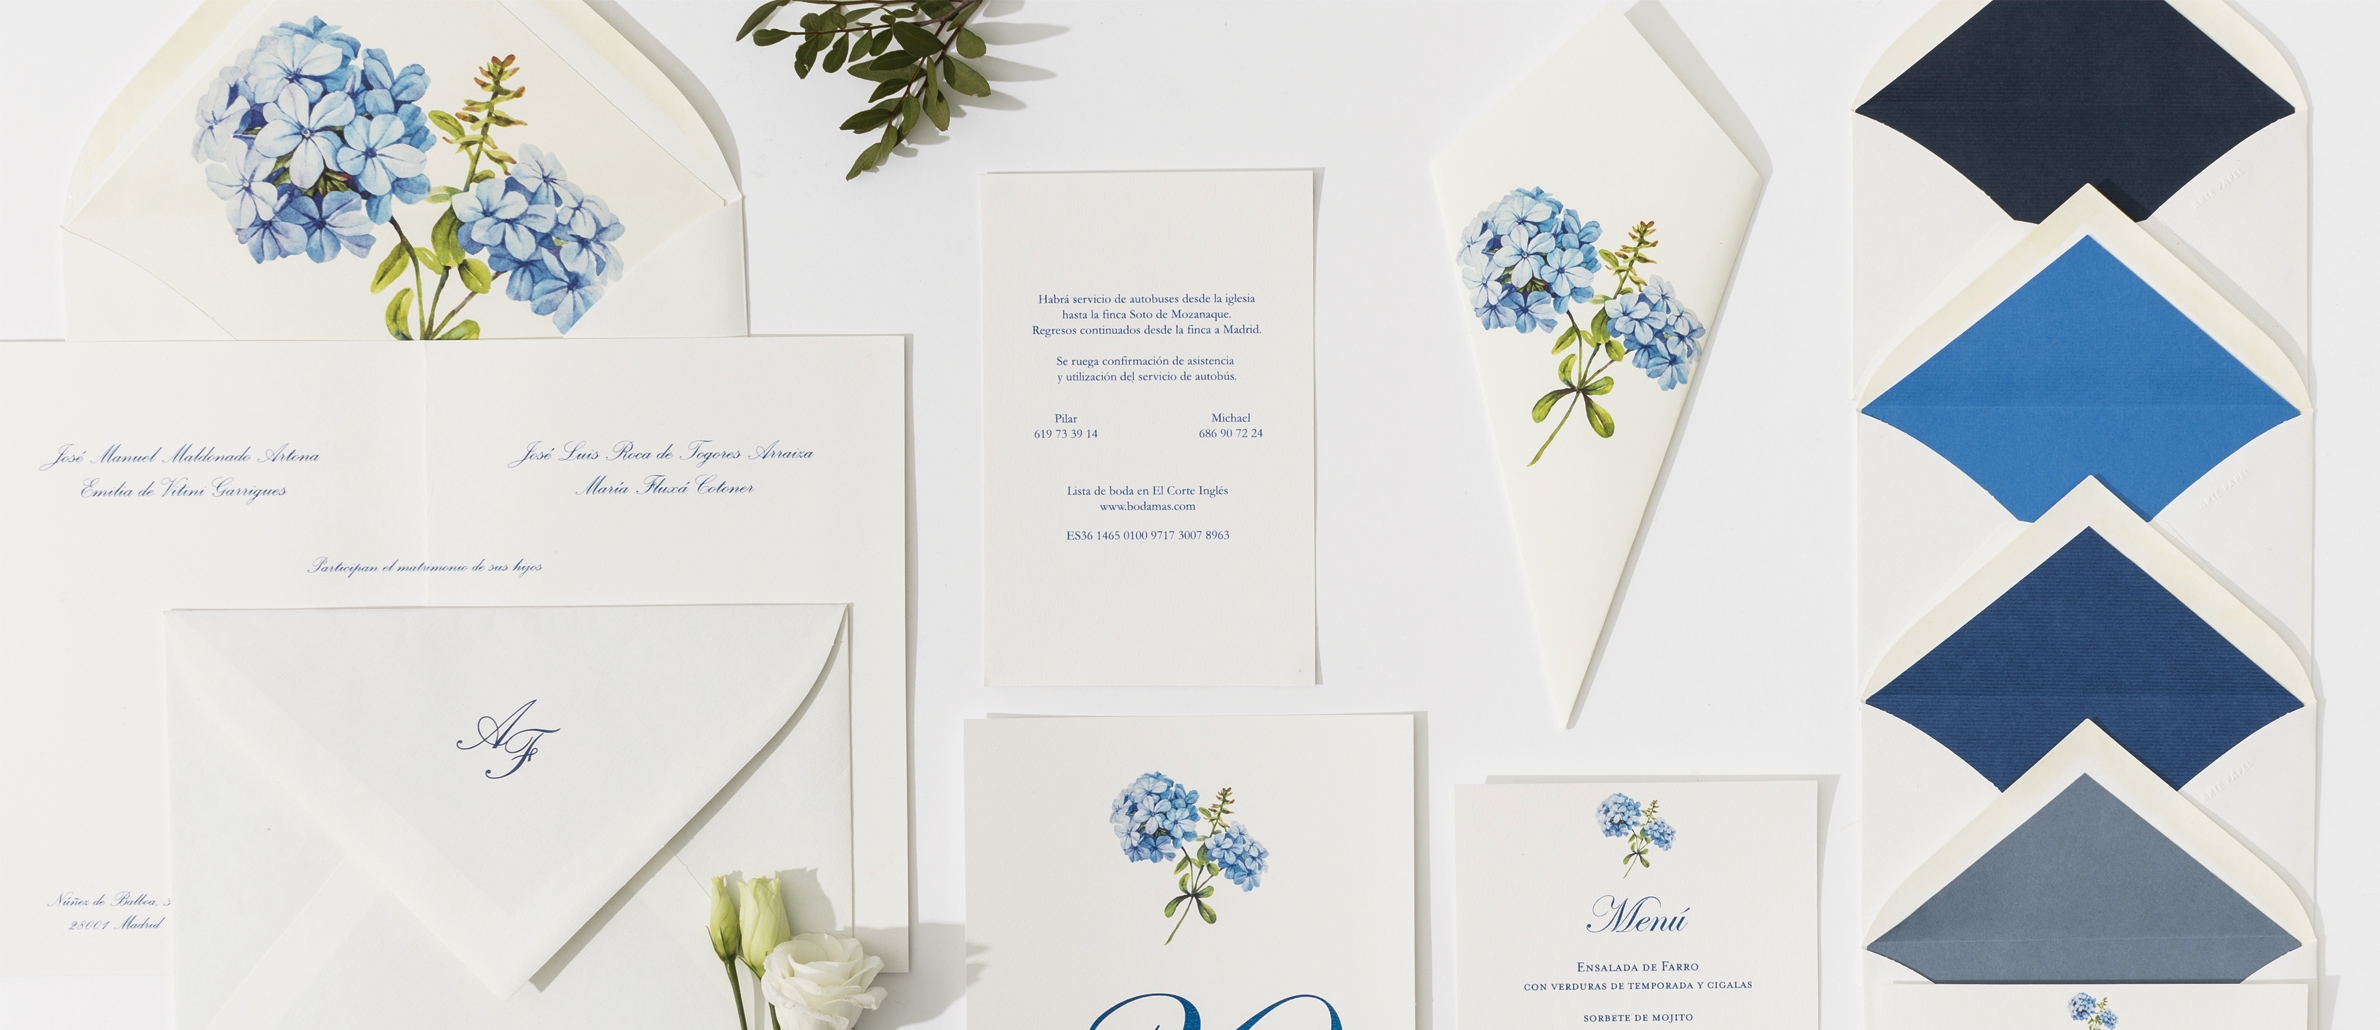 Ofensa alias Anterior Invitación Hortensia Blue - Artepapel, invitaciones de boda